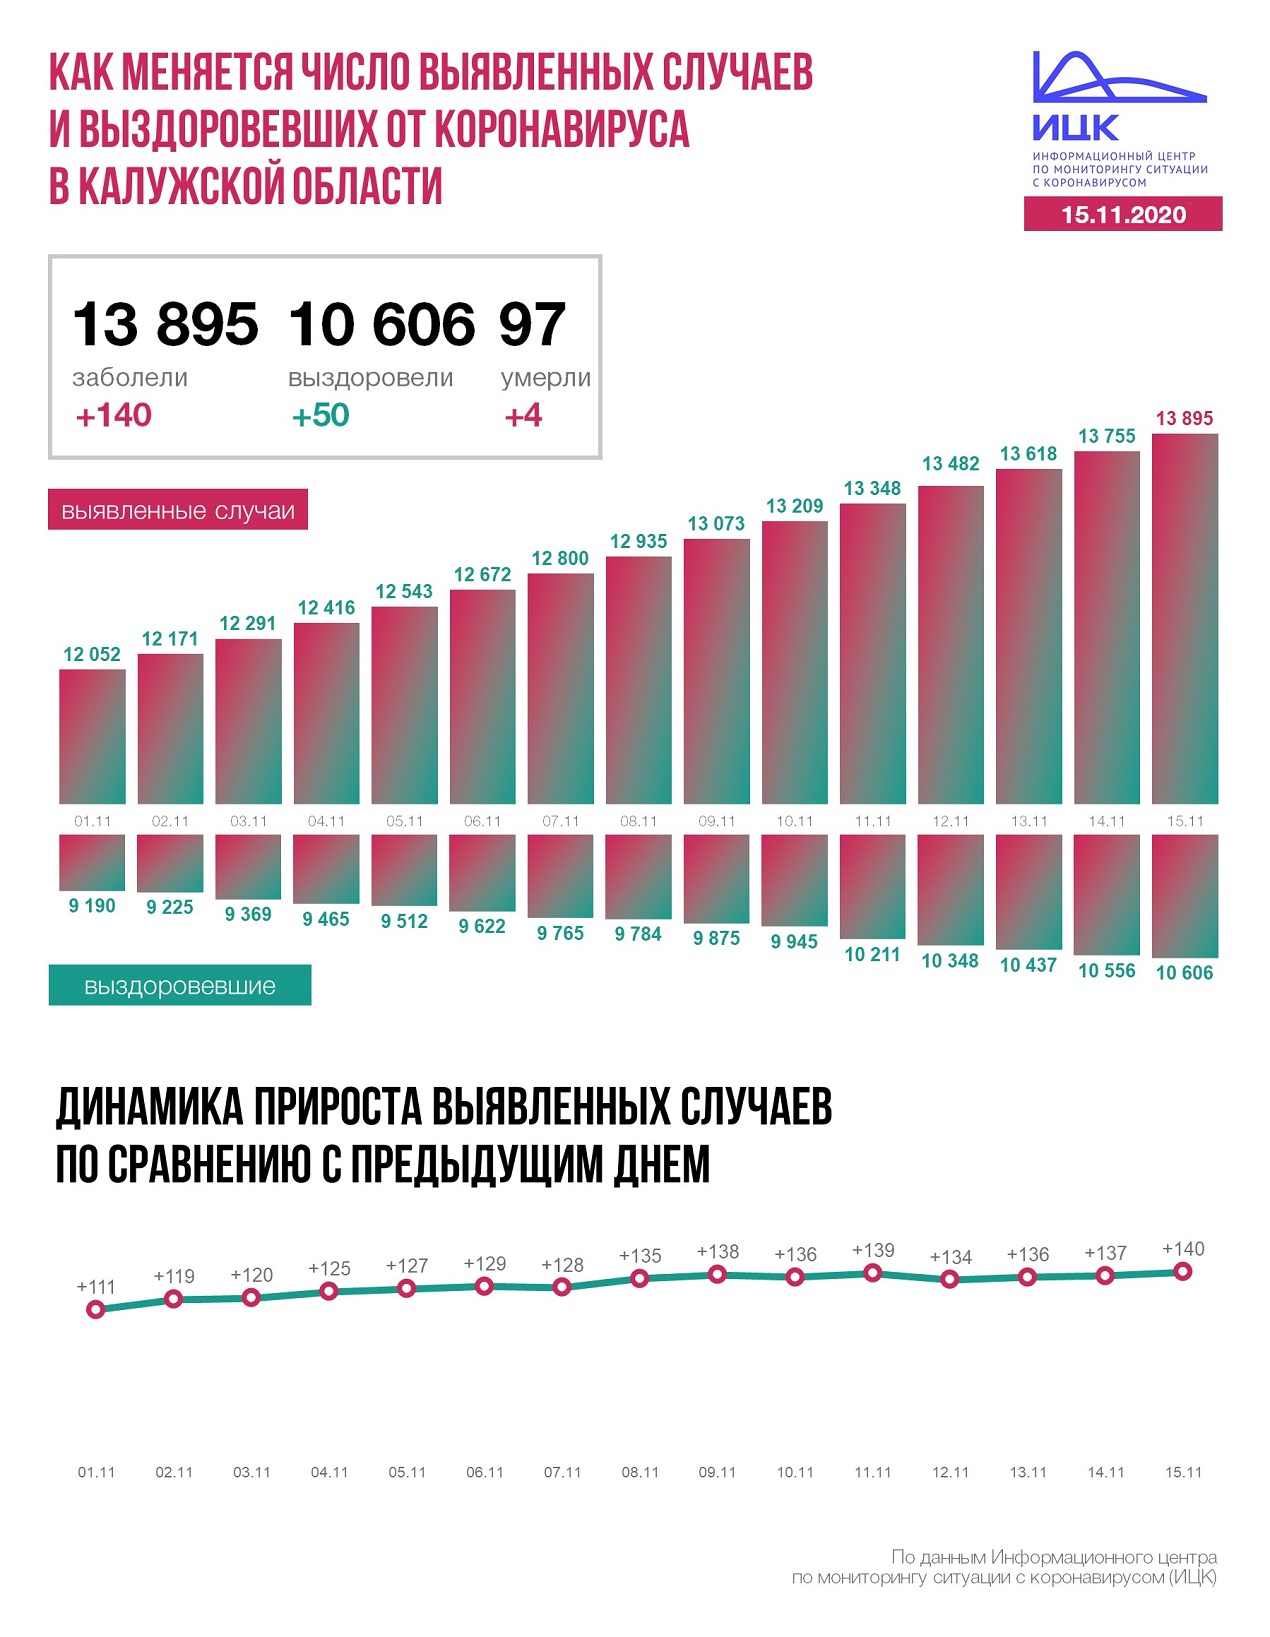 Официальные данные по коронавирусу в Калужской области на 15 ноября 2020 года.